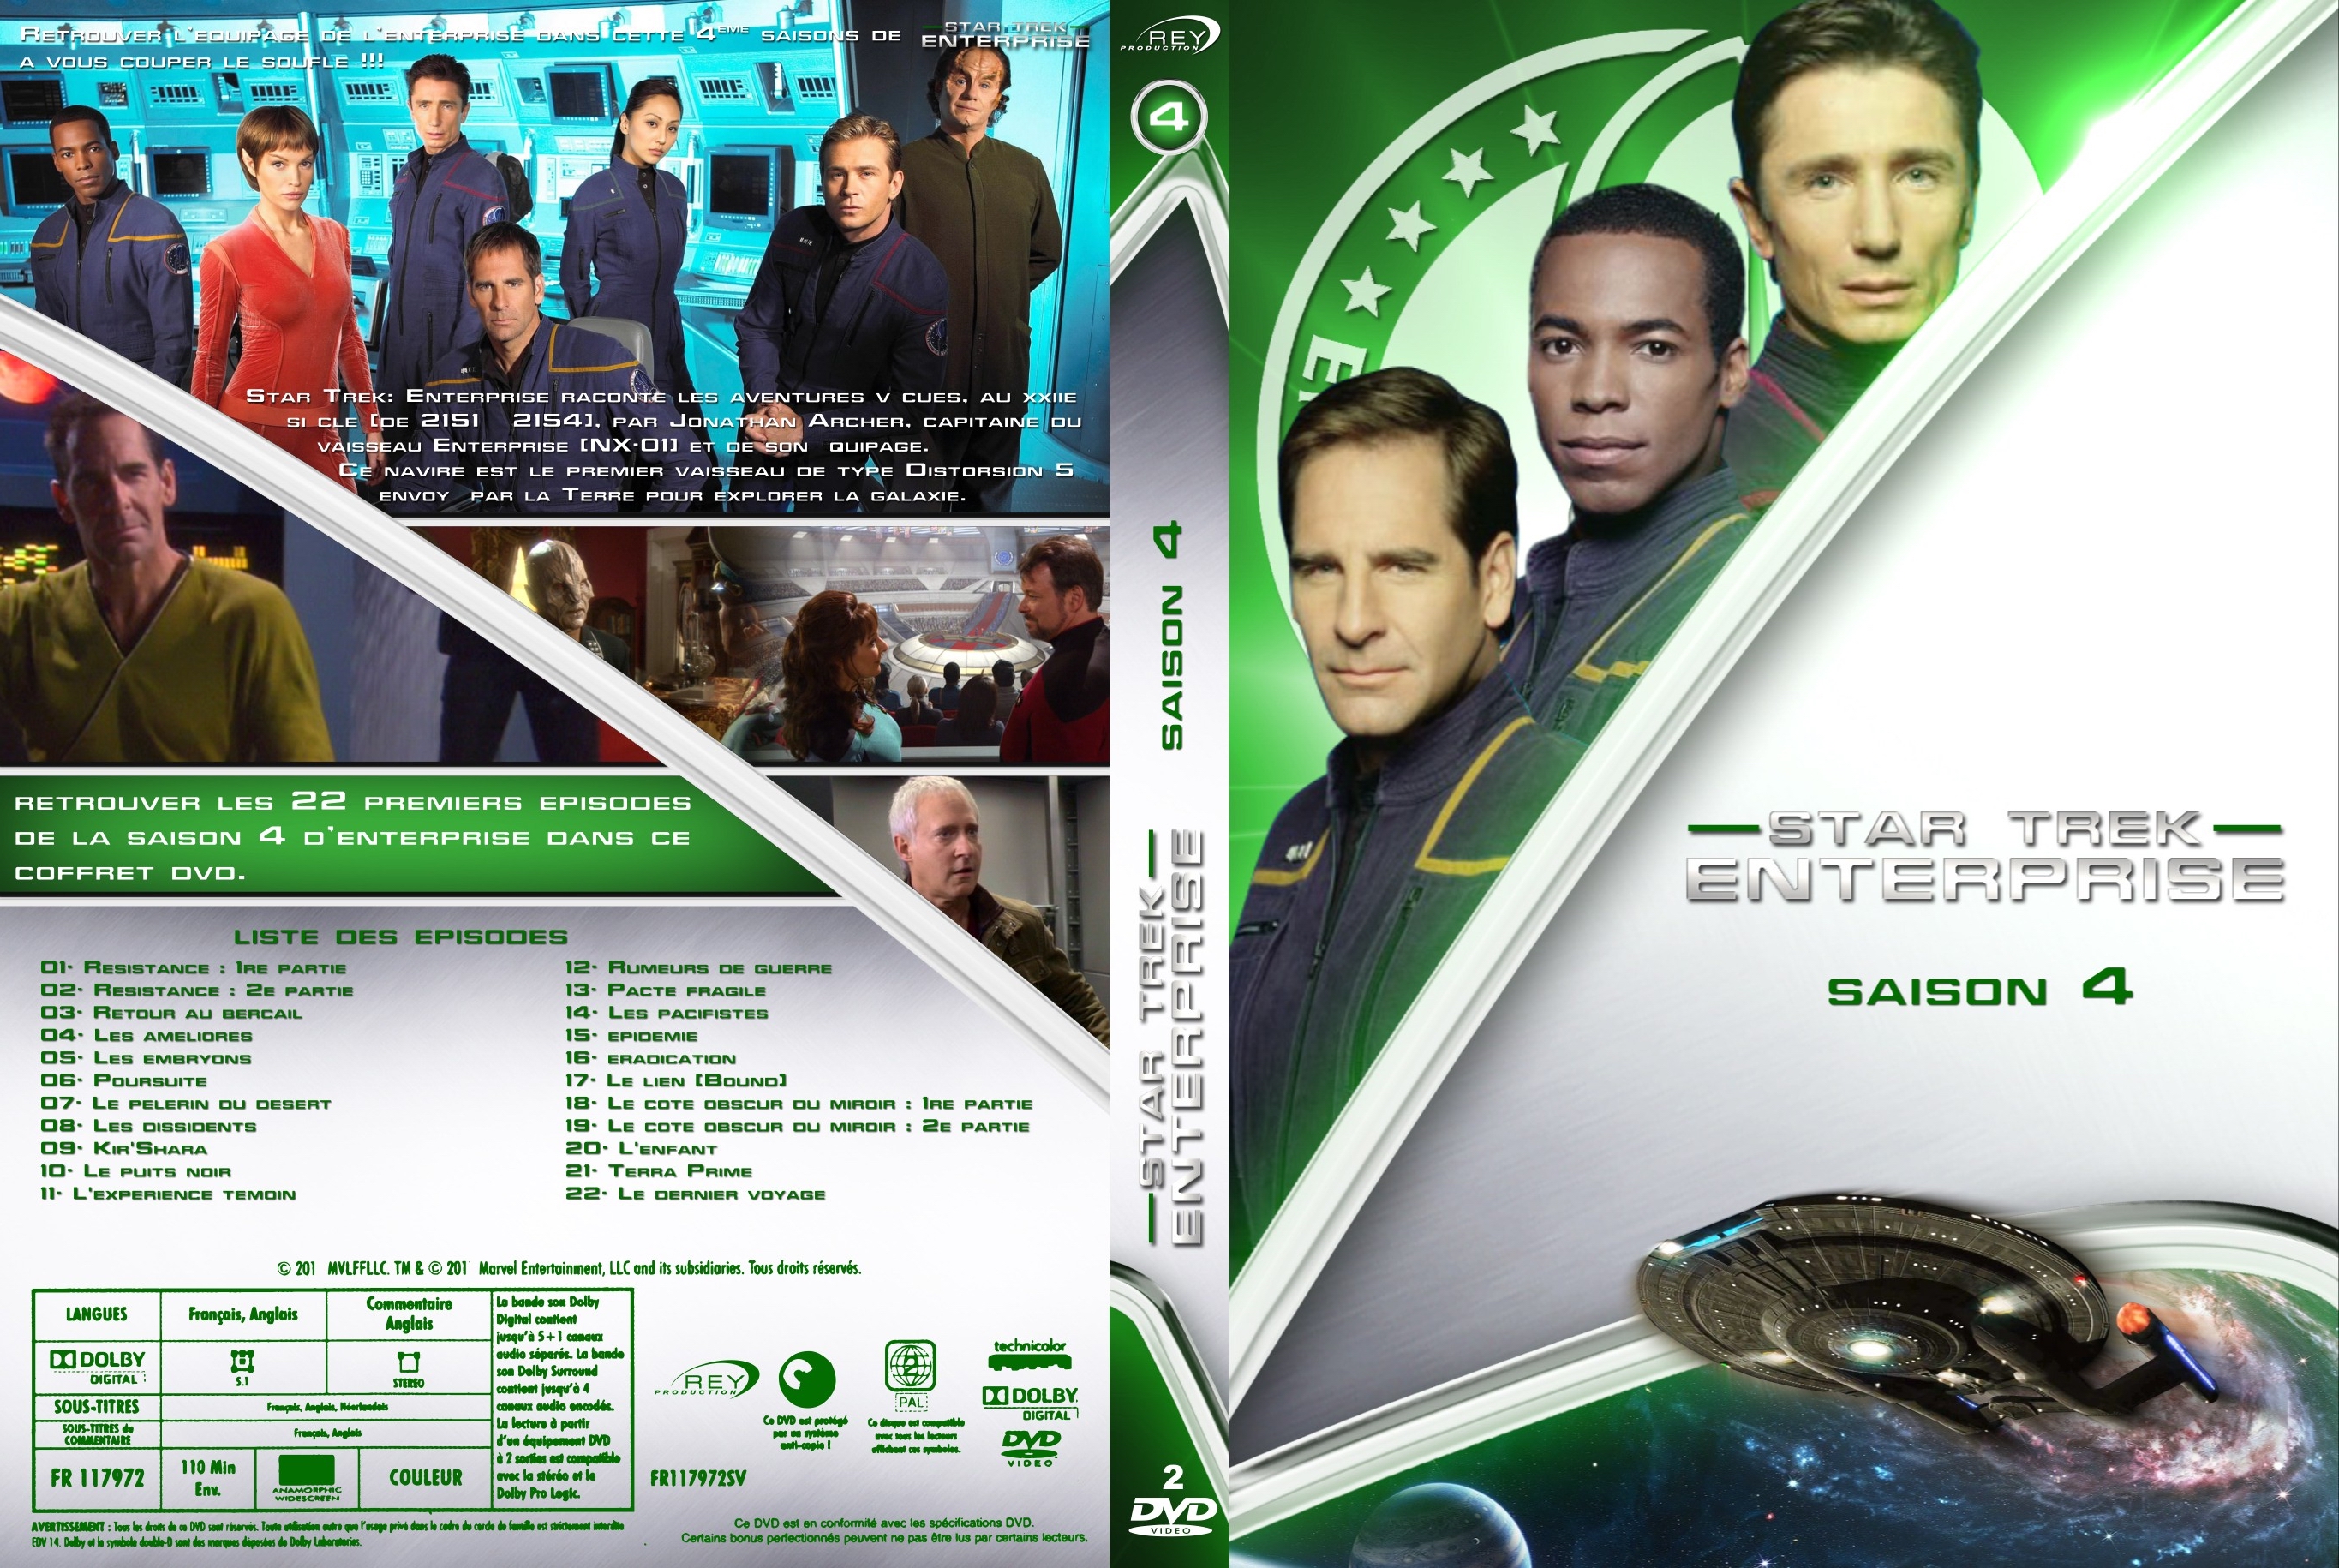 Jaquette DVD Star Trek Enterprise saison 4 custom